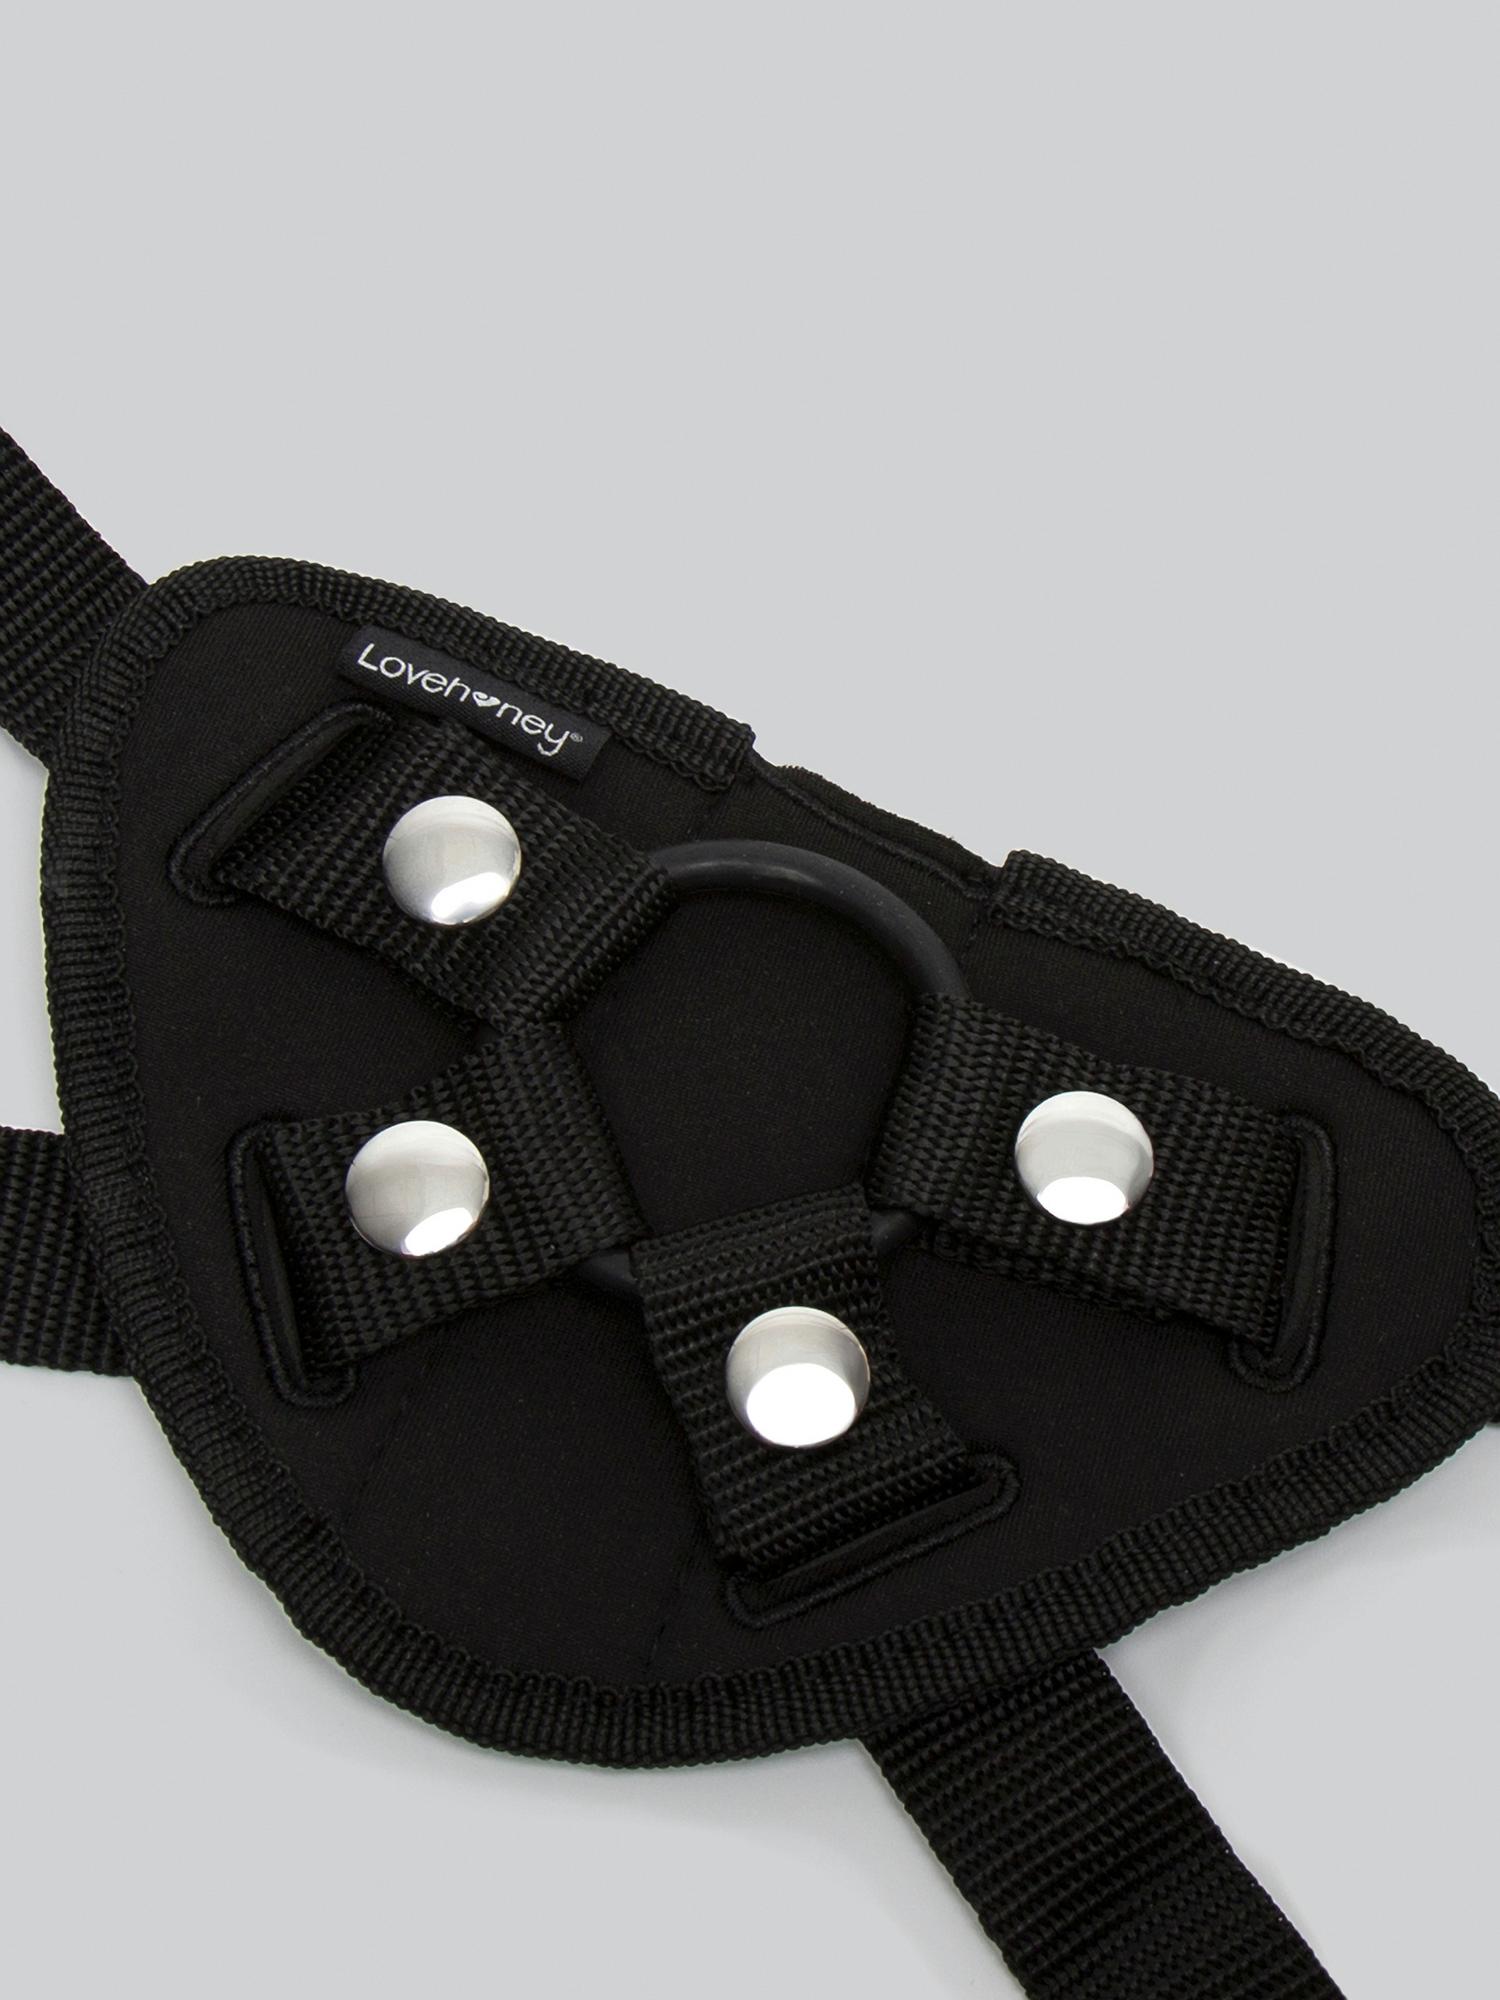 Lovehoney Beginner's Unisex Strap-On Harness Kit. Slide 7